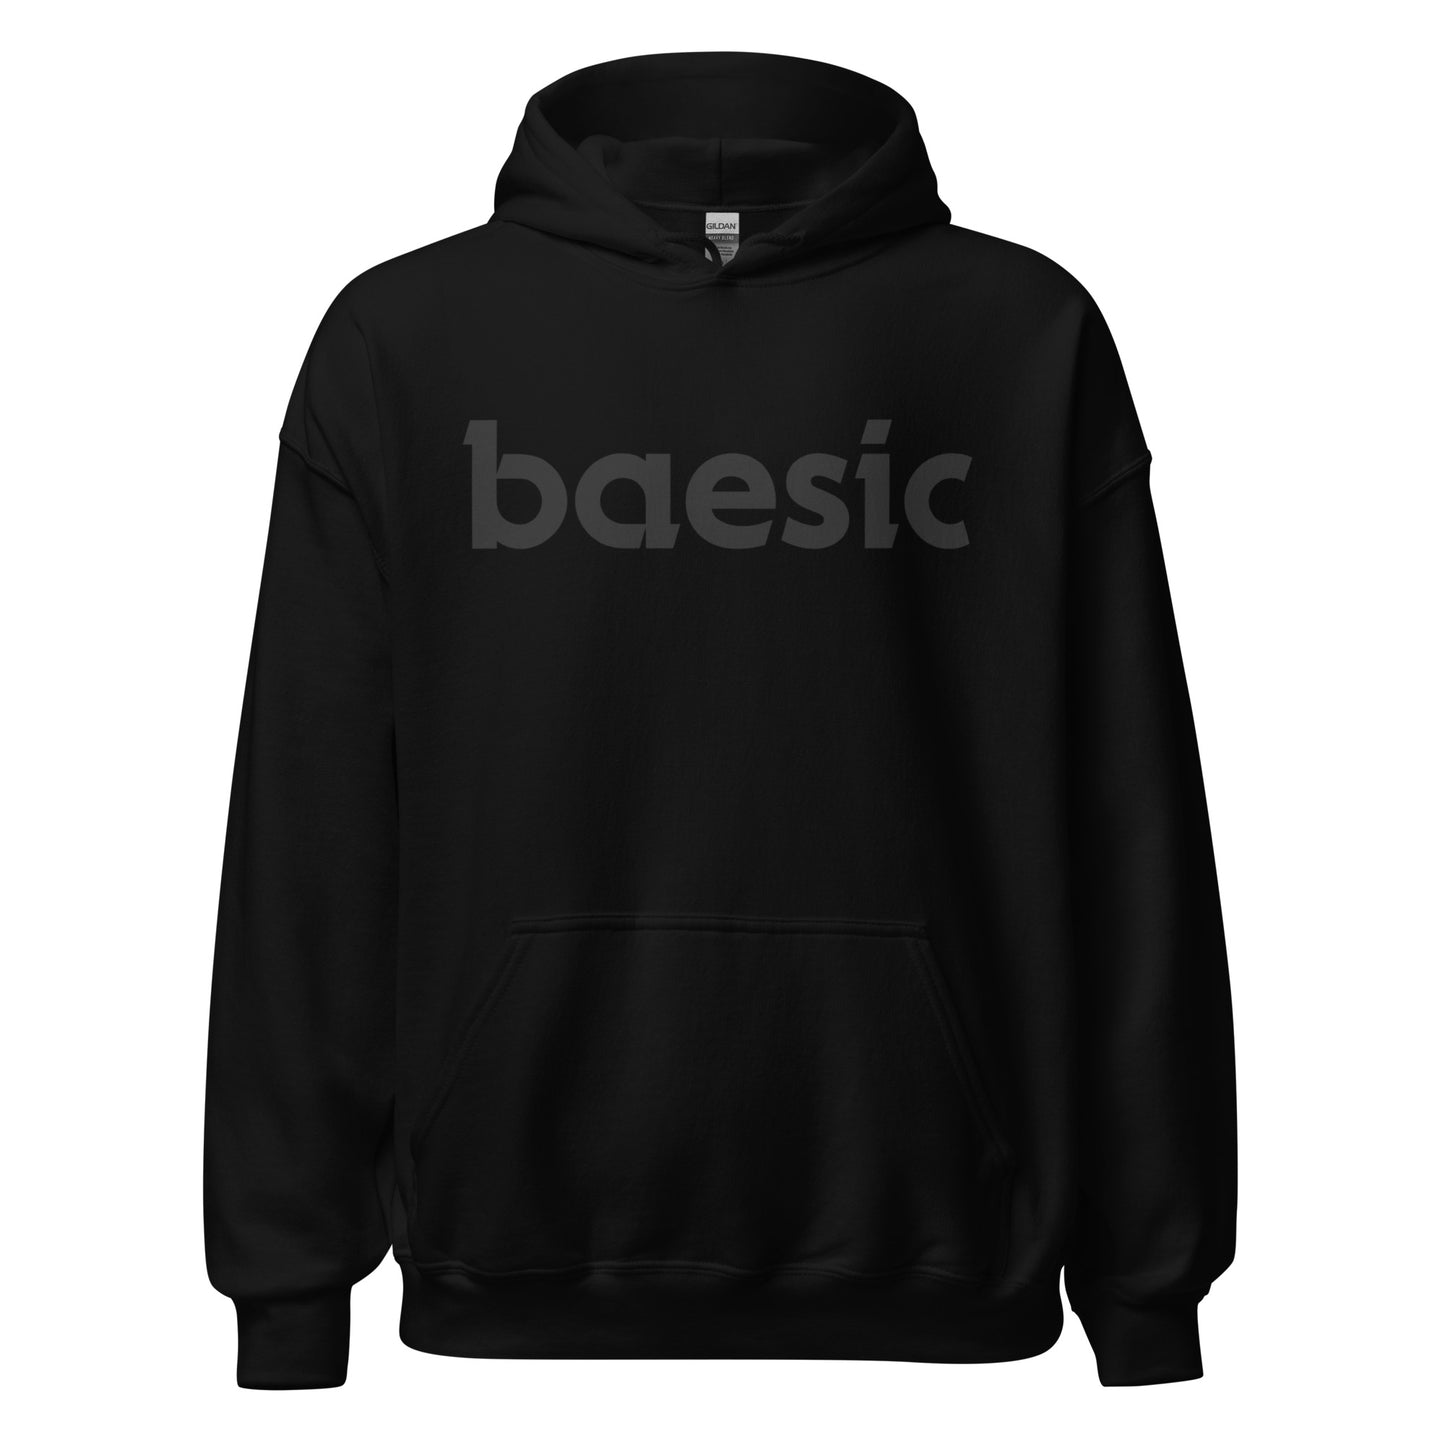 Baeginning - Unisex Hoodie - Baesic